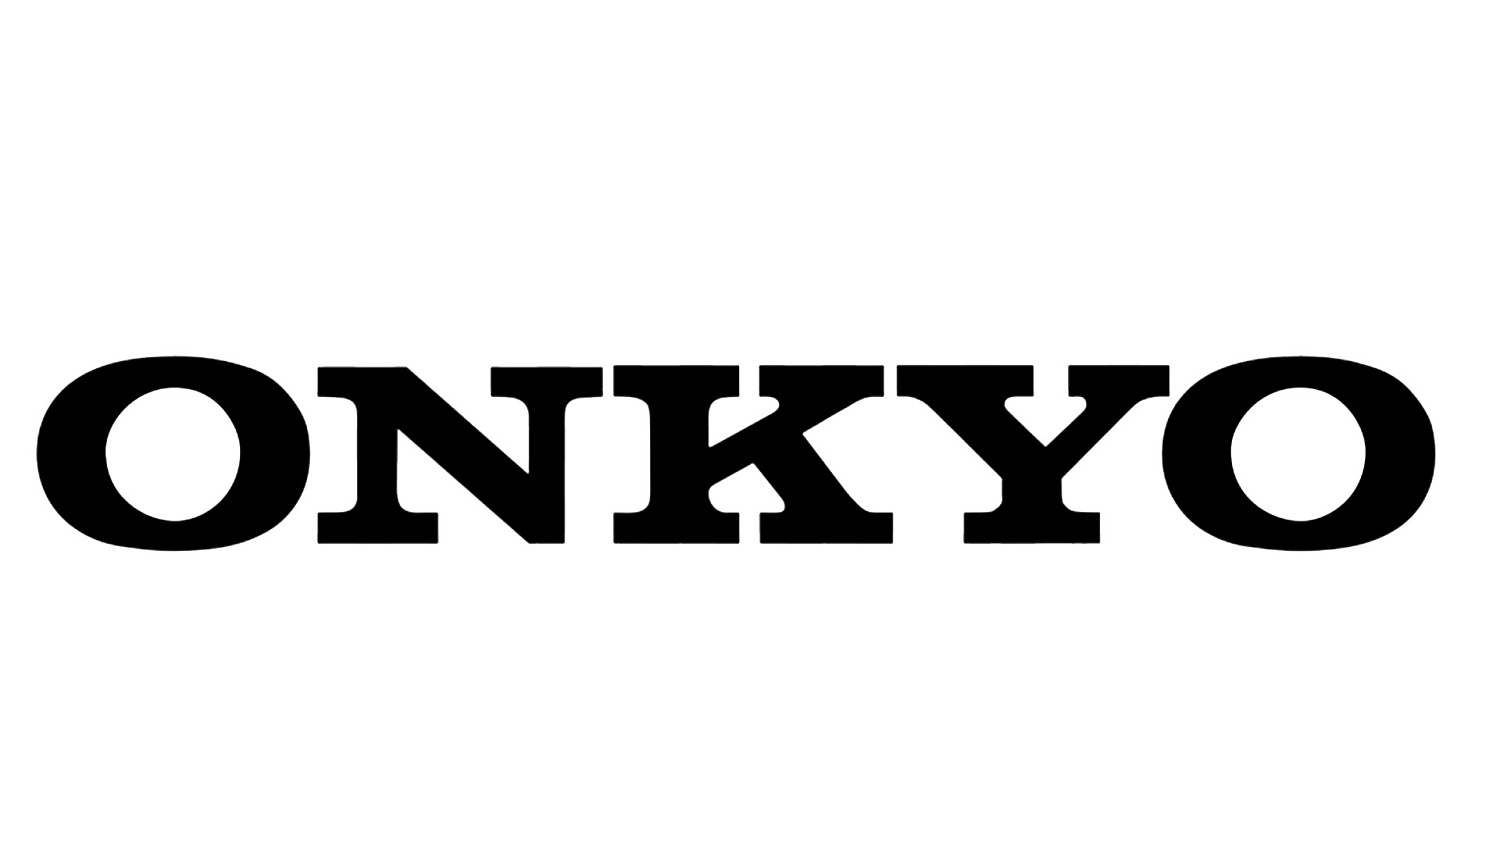 Onkyo умерла — да здравствует Onkyo!